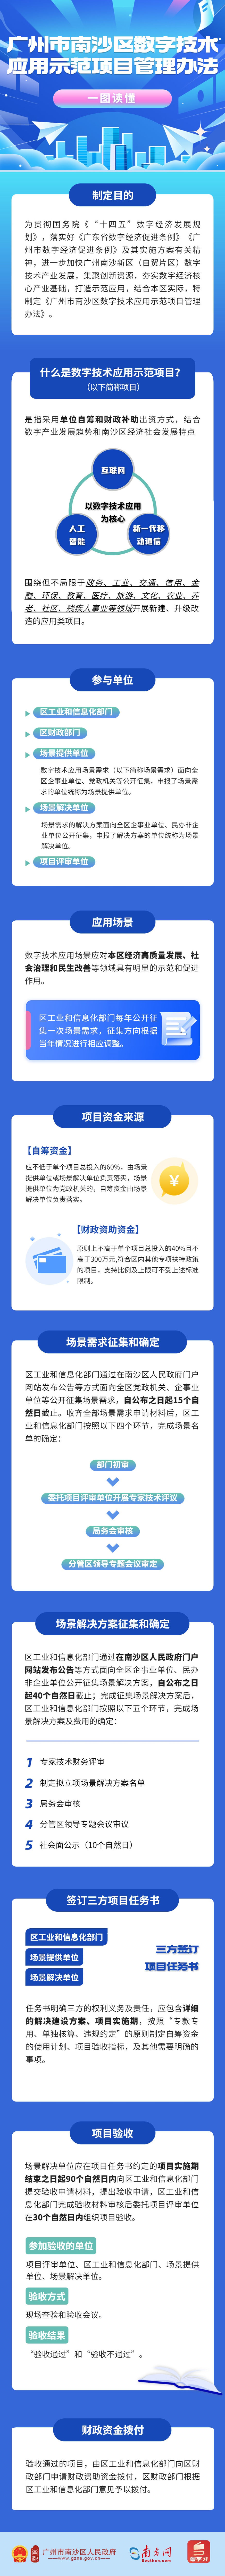 南沙丨《广州市南沙区数字技术应用示范项目管理办法》 (1).jpg